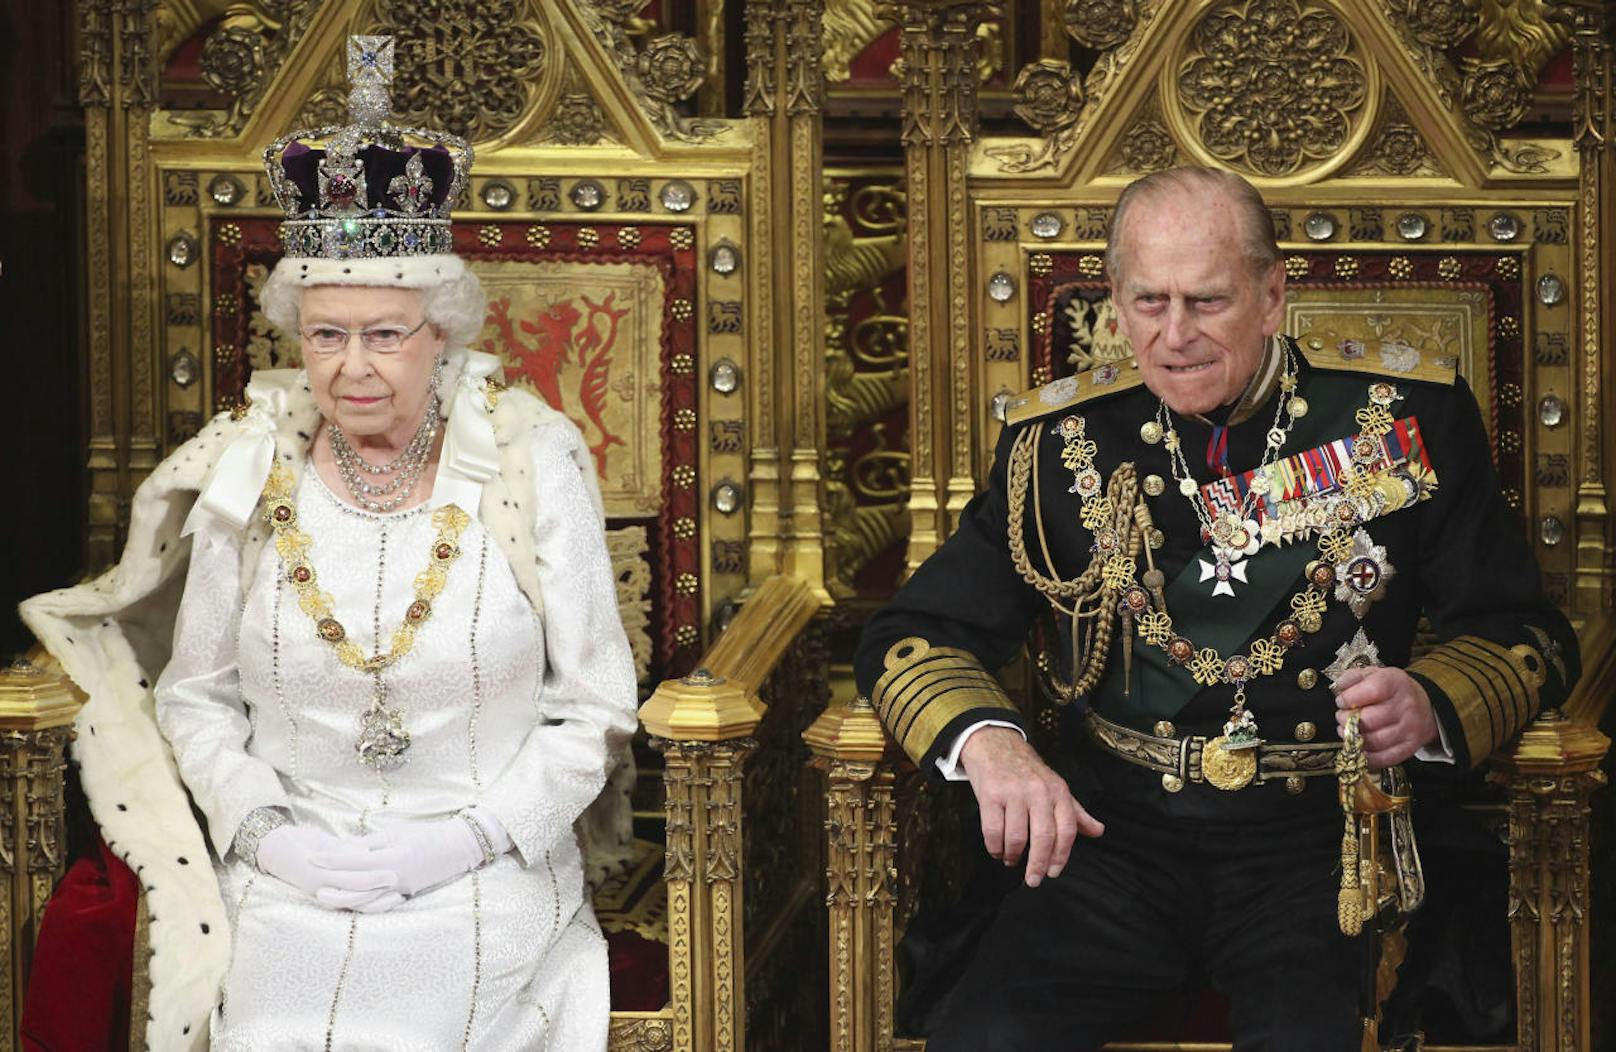 Jemand wagte es einmal, Prinz Philip zu fragen, wann Charles auf den Thron kommen würde. Seine Antwort: "Fragen Sie mich gerade, wann die Queen sterben wird?" Bild: Prinz Philip mit Elizabeth II. sind seit 1947 verheiratet